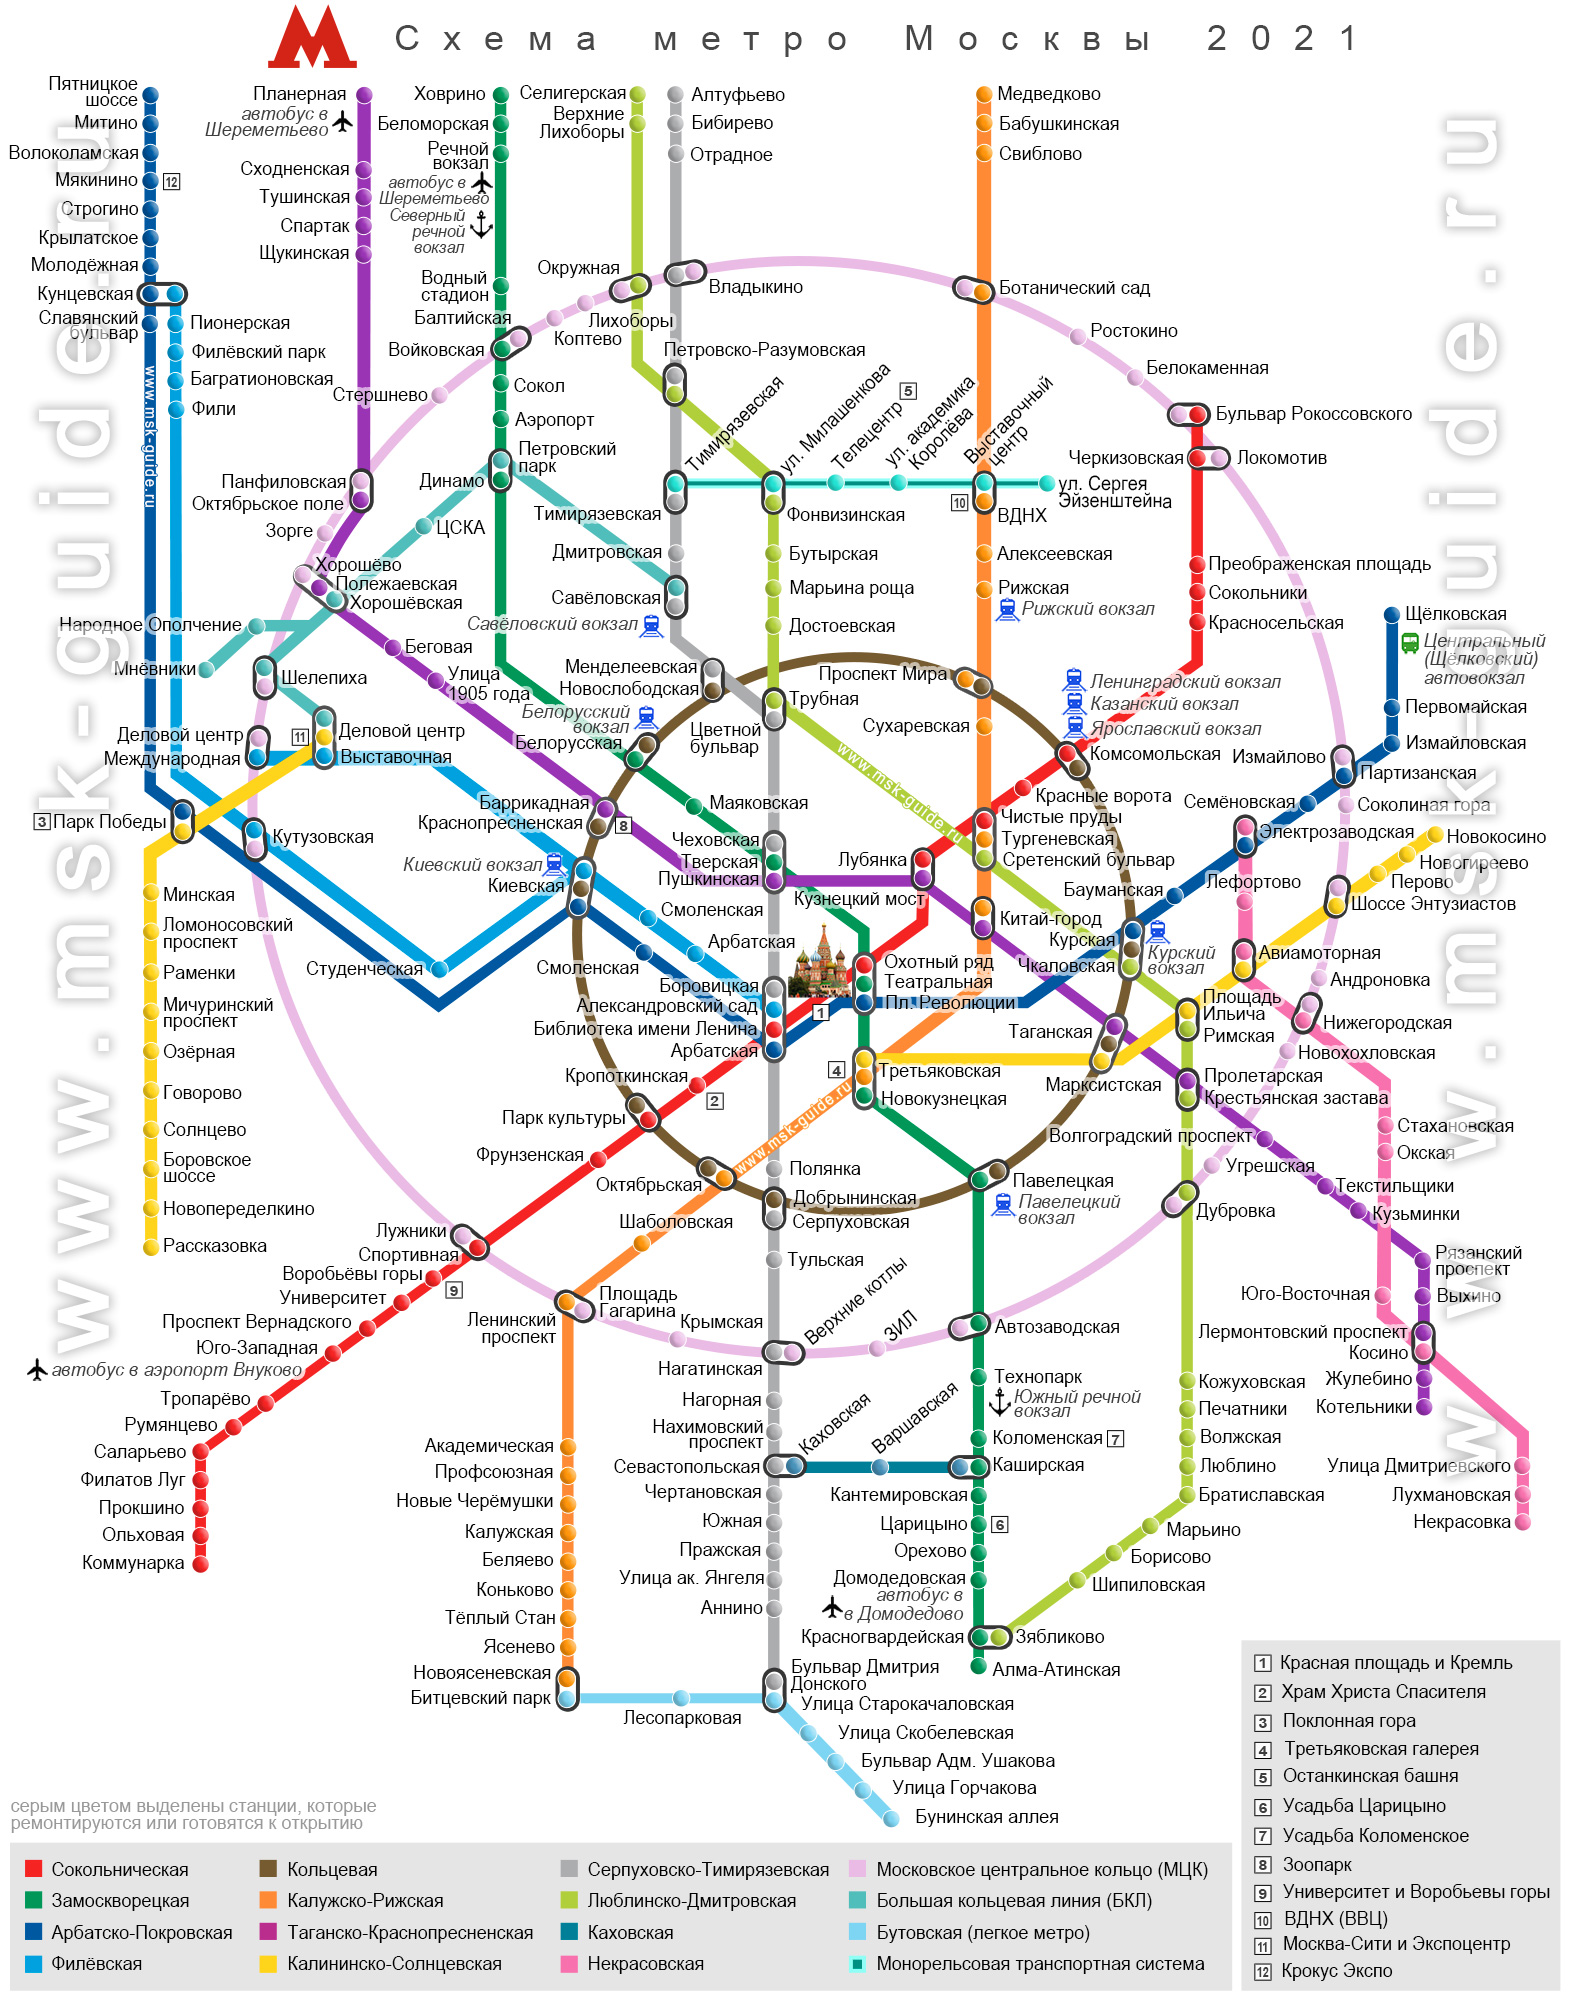 Метро дмитрия донского на схеме метро москвы